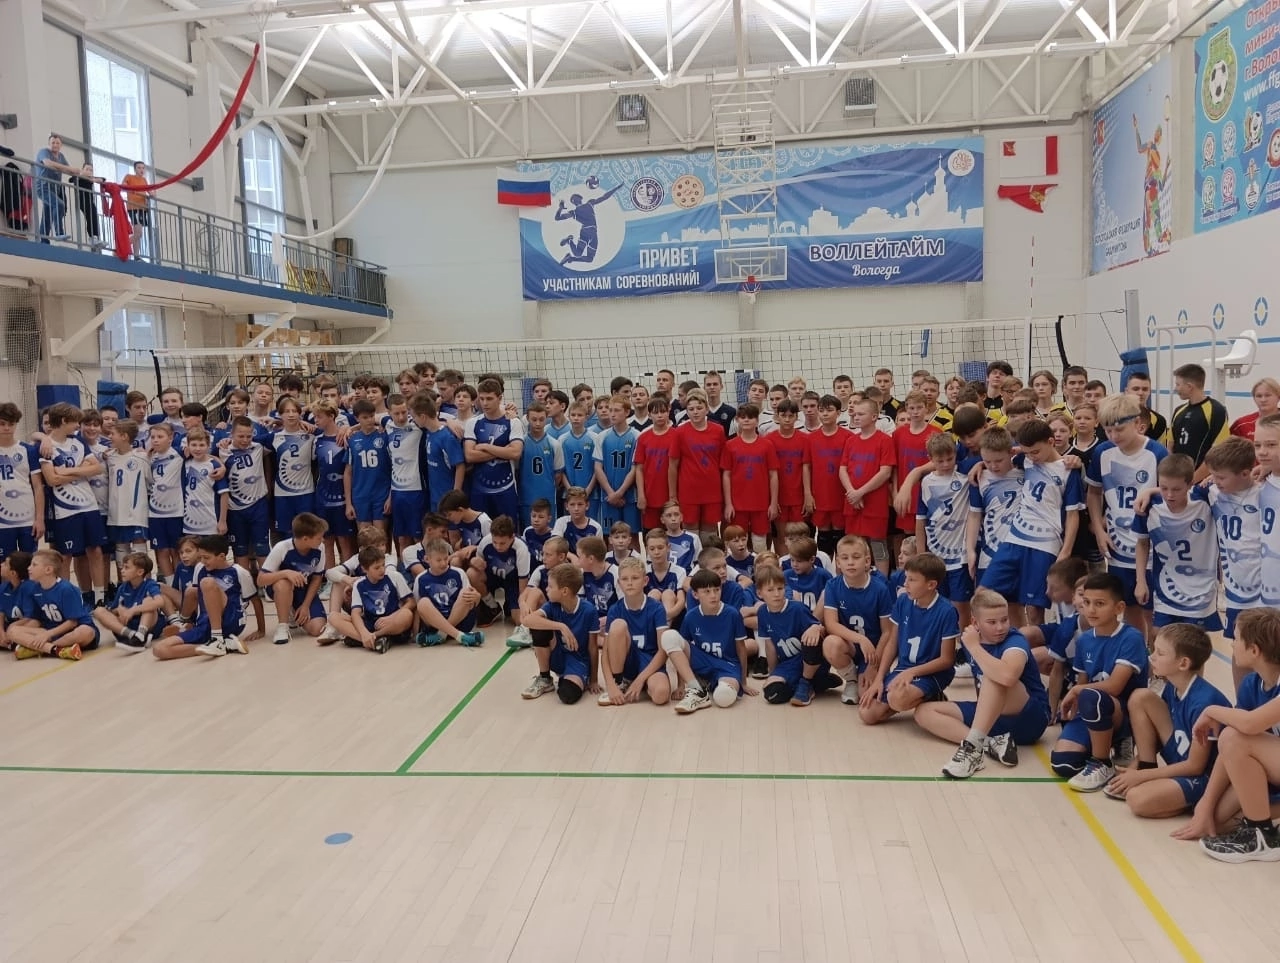 14 и 15 октября в г. Вологда проходило Первенство Вологодской области по волейболу среди юношей 2007-2008, 2009-2010 и 2011-2012г.р..